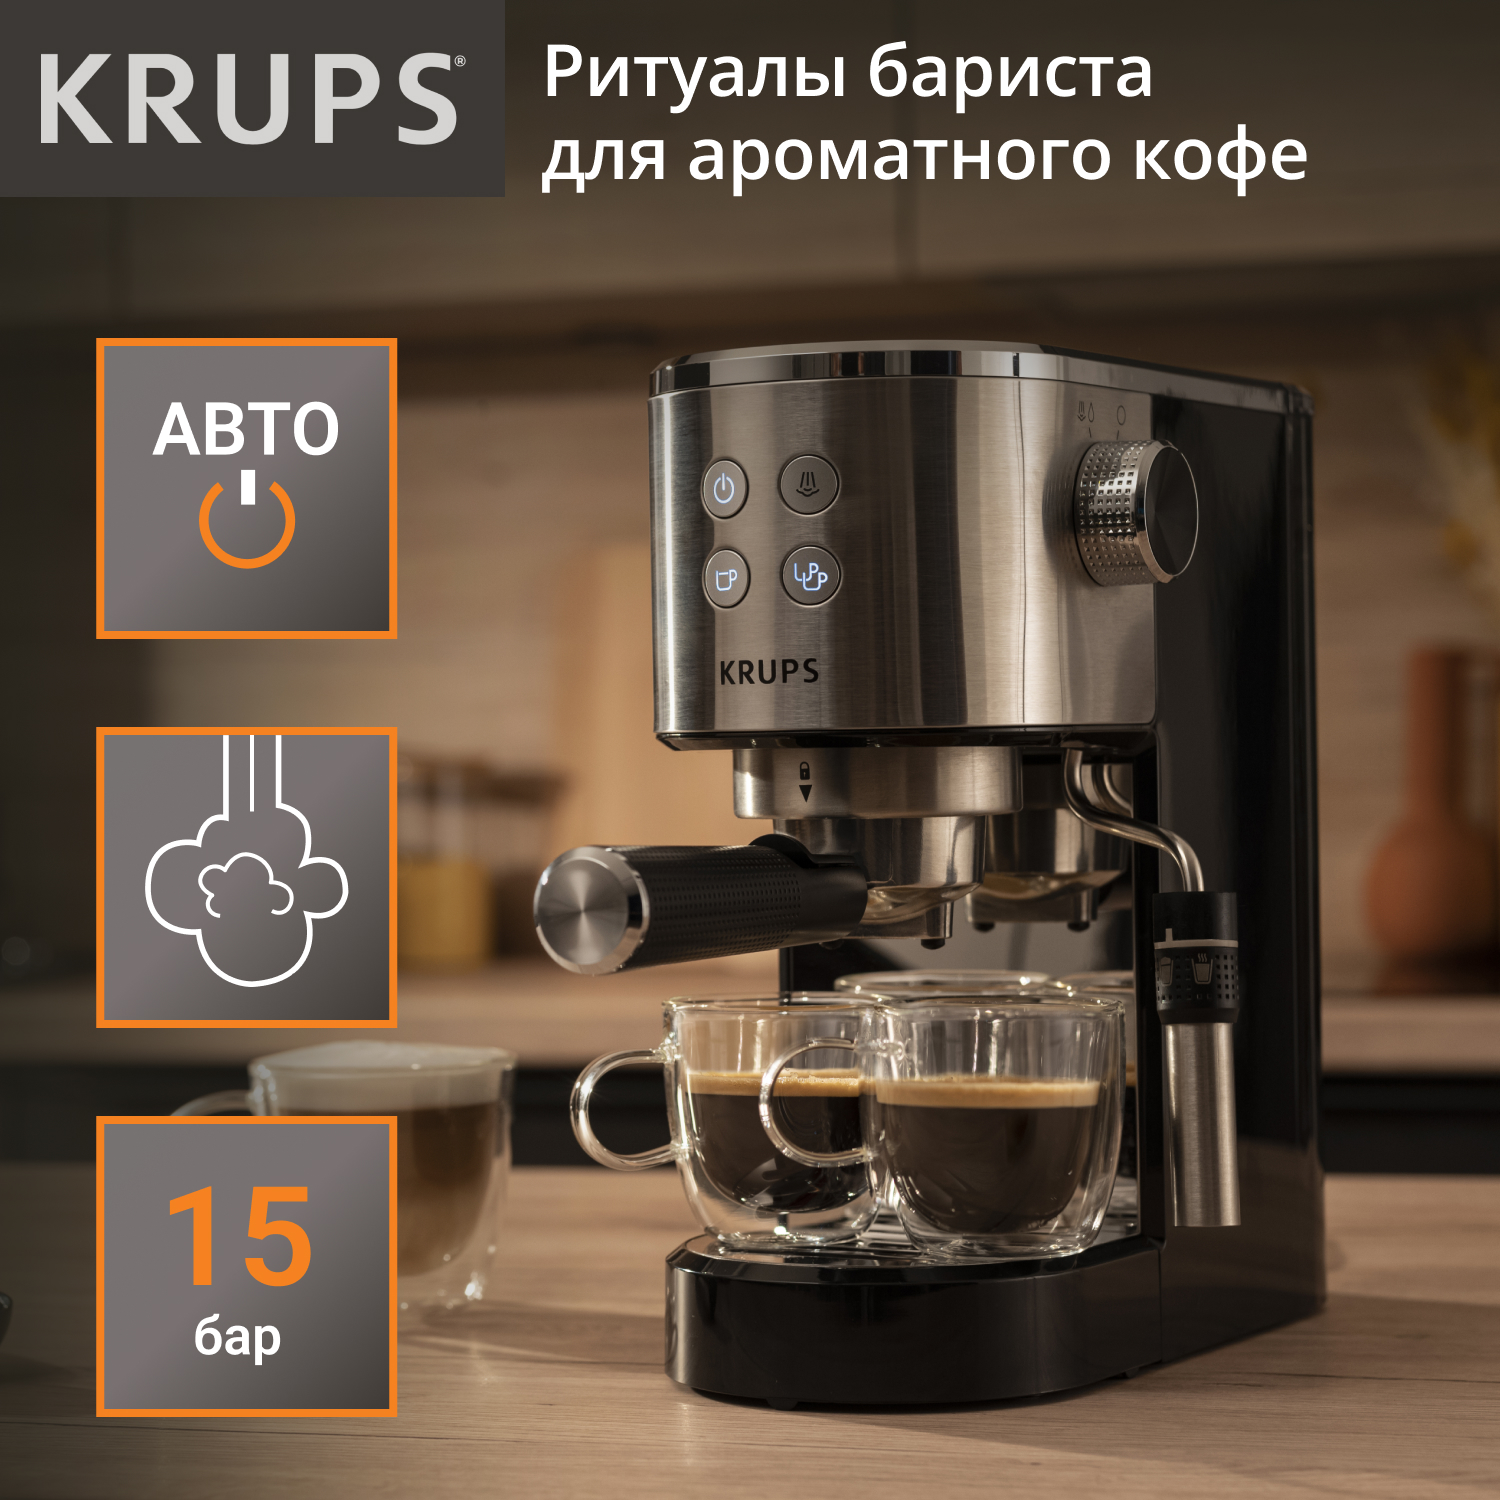 Рожковая кофеварка KRUPS XP444C10 серебристая, черная рожковая кофеварка sate gt 100 черная